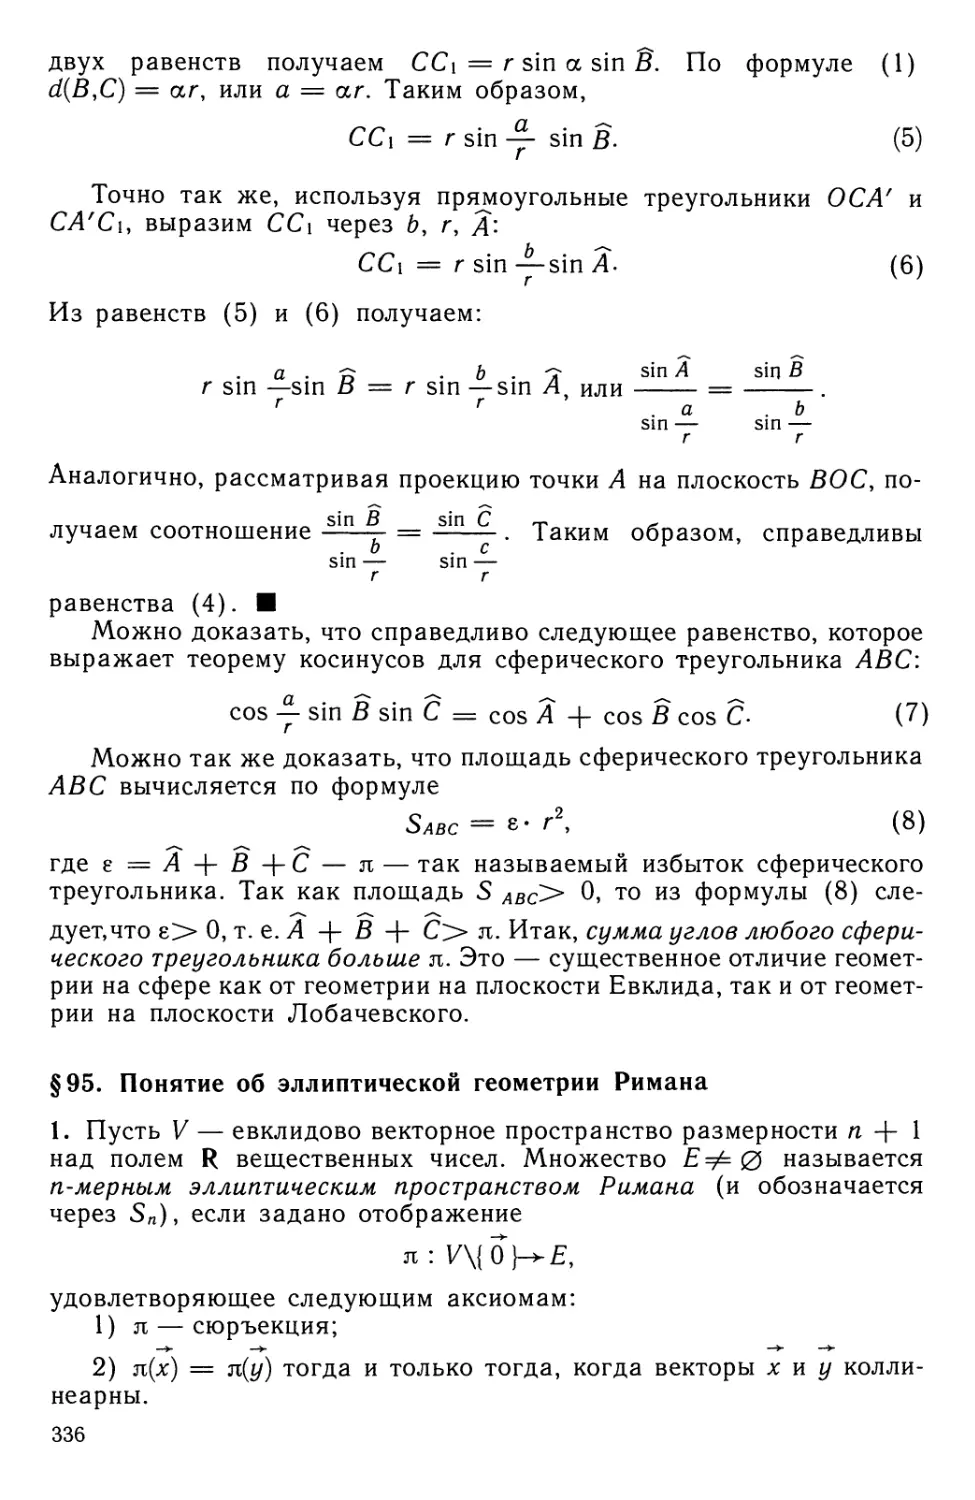 § 95. Понятие об эллиптической геометрии Римана